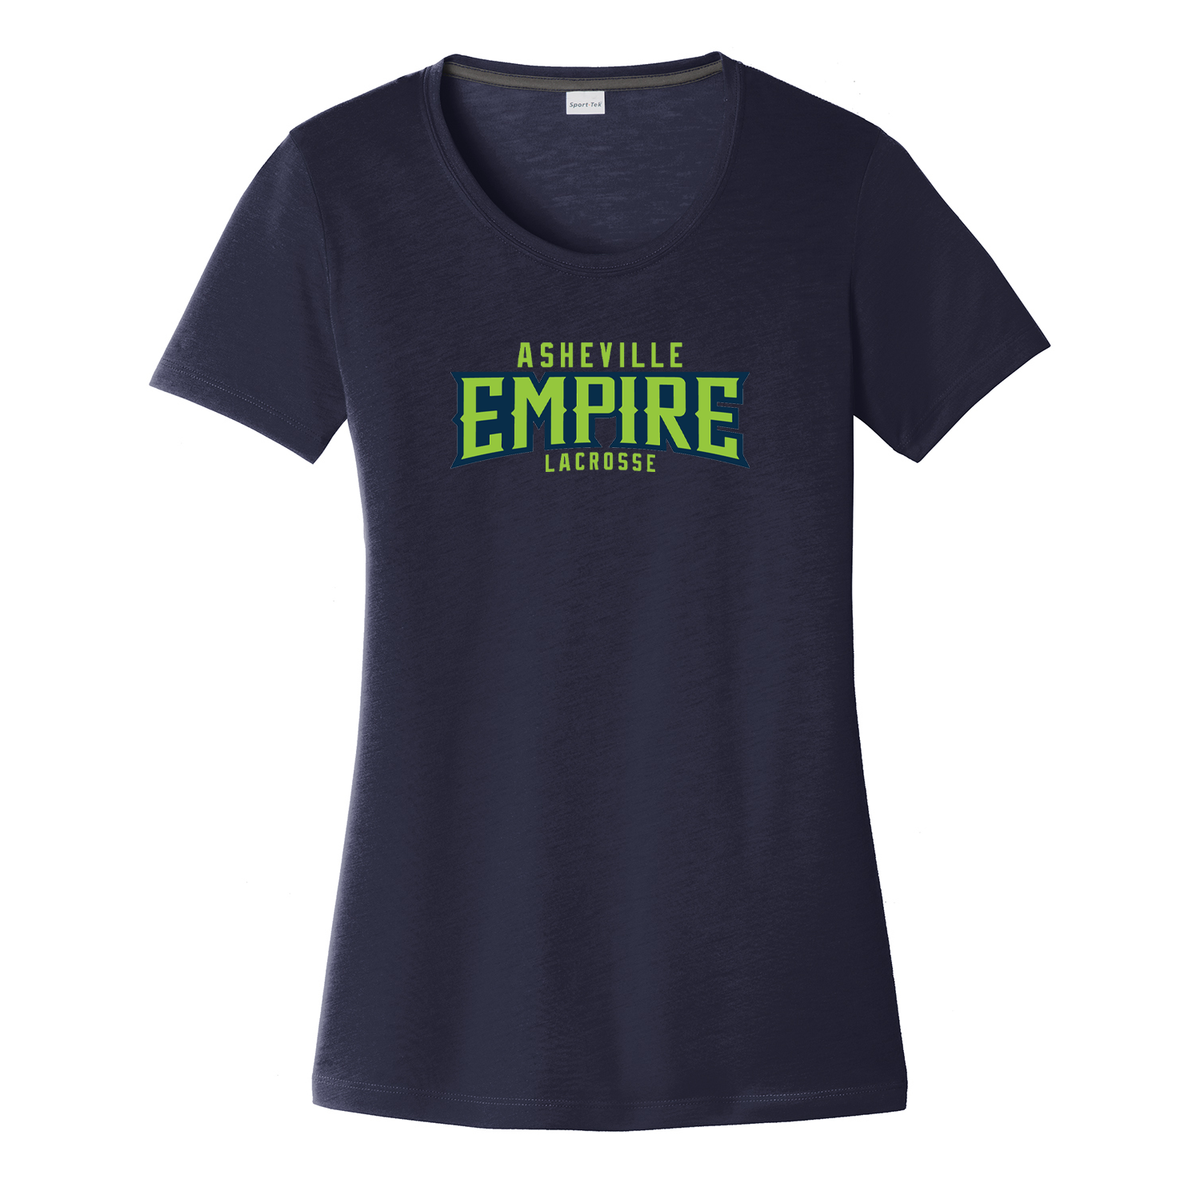 Asheville Empire Lacrosse Women's CottonTouch Performance T-Shirt